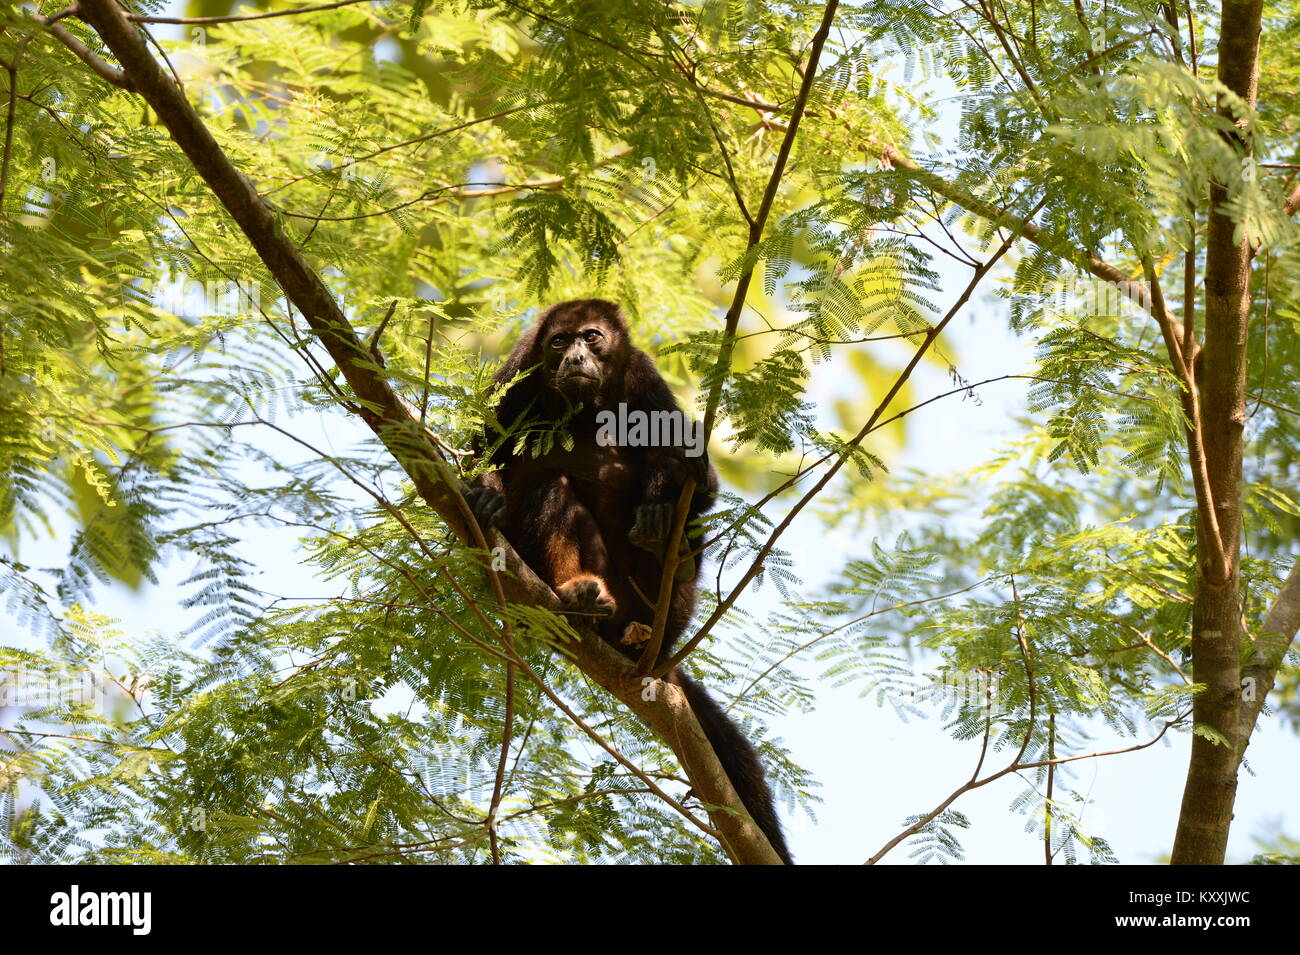 Los monos aulladores llevan una vida tranquila evitando el contacto humano en Costa Rica. El ruidoso masculino puede ser escuchado en días de descanso en unos pocos lugares en la Península de Nicoya Foto de stock